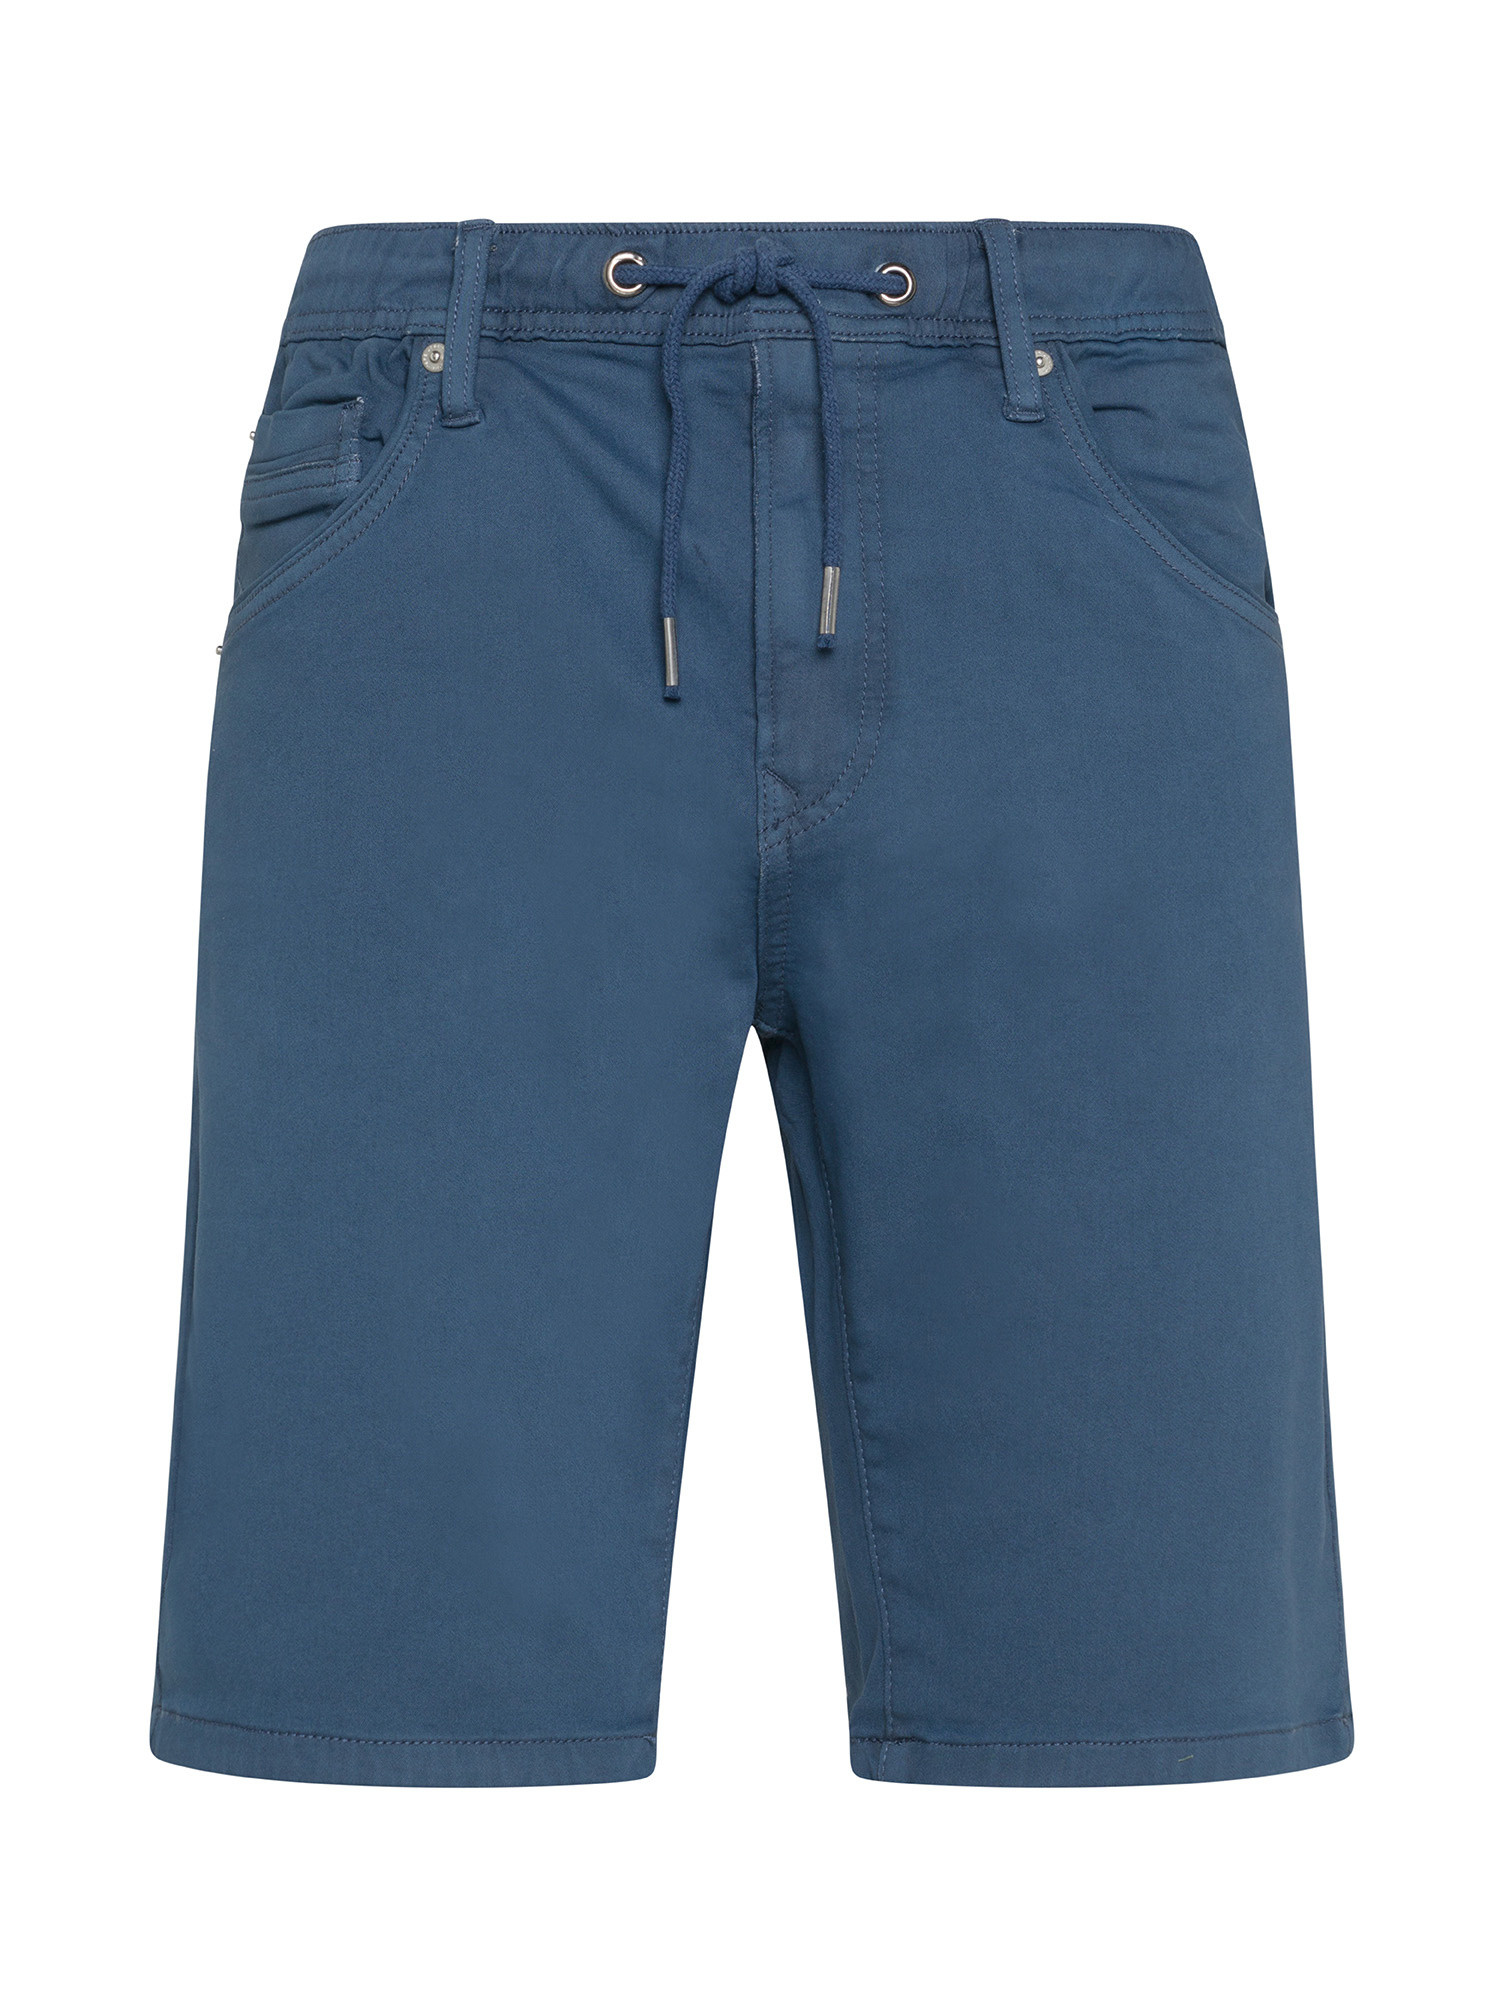 Pepe Jeans - Slim fit five pocket Bermuda shorts, Denim, large image number 0